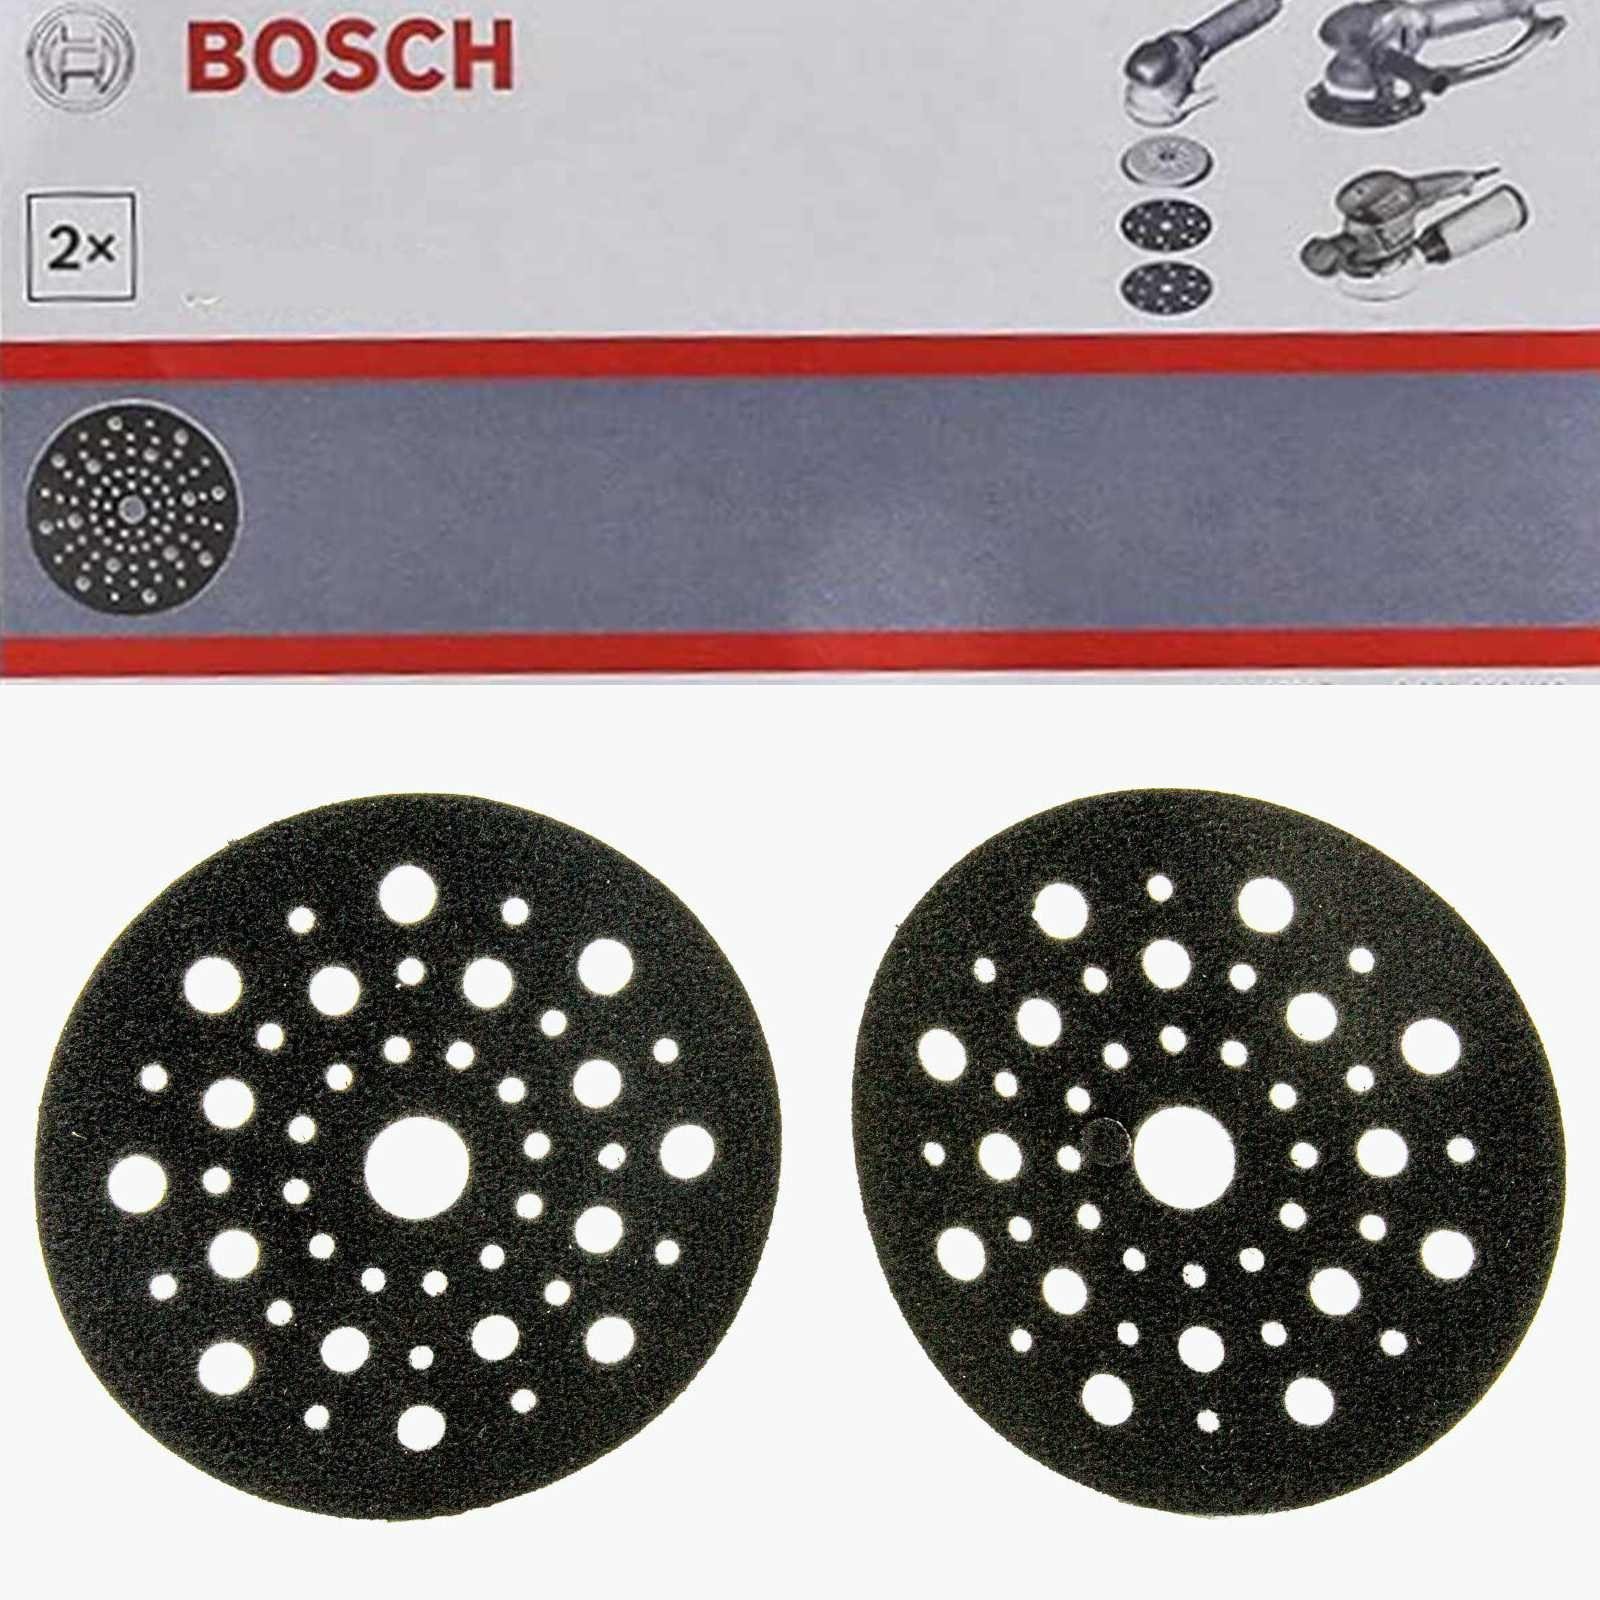 BOSCH Bohrfutter Bosch Professional 2 Stück Schleiftellerschoner (125 mm, Exzenters